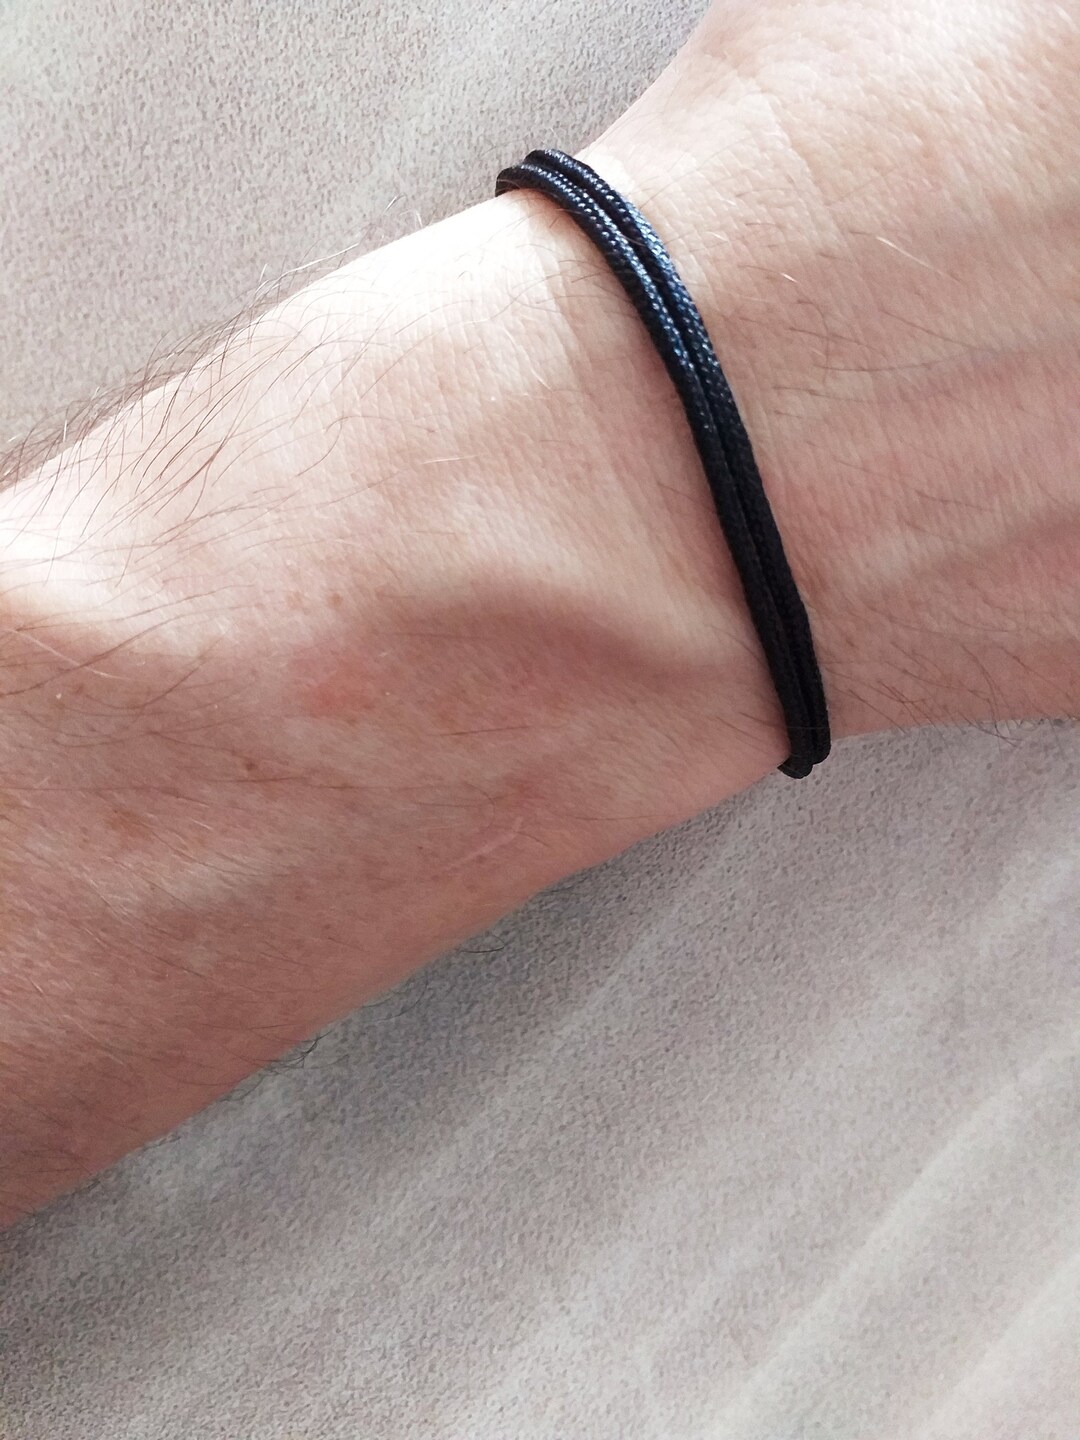 Black Nylon Adjustable String Bracelet with Decorative Slide Knot, Pack of 5